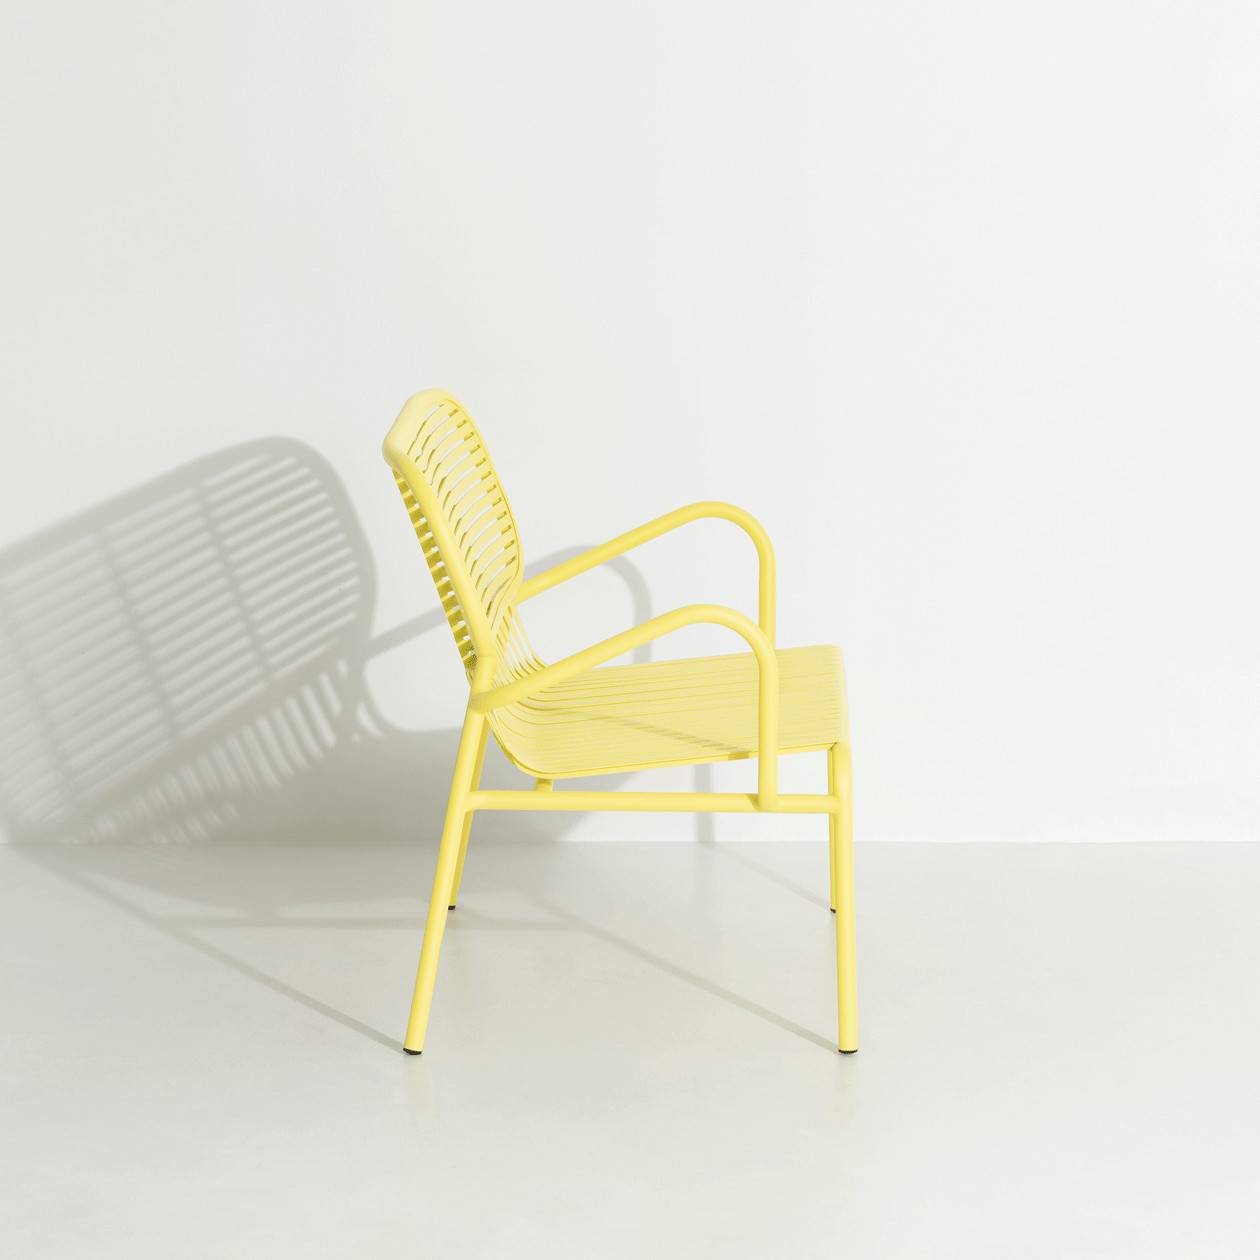 Week-End Gartensofa in Yellow präsentiert im Onlineshop von KAQTU Design AG. Lounge Sofa ist von Petite Friture